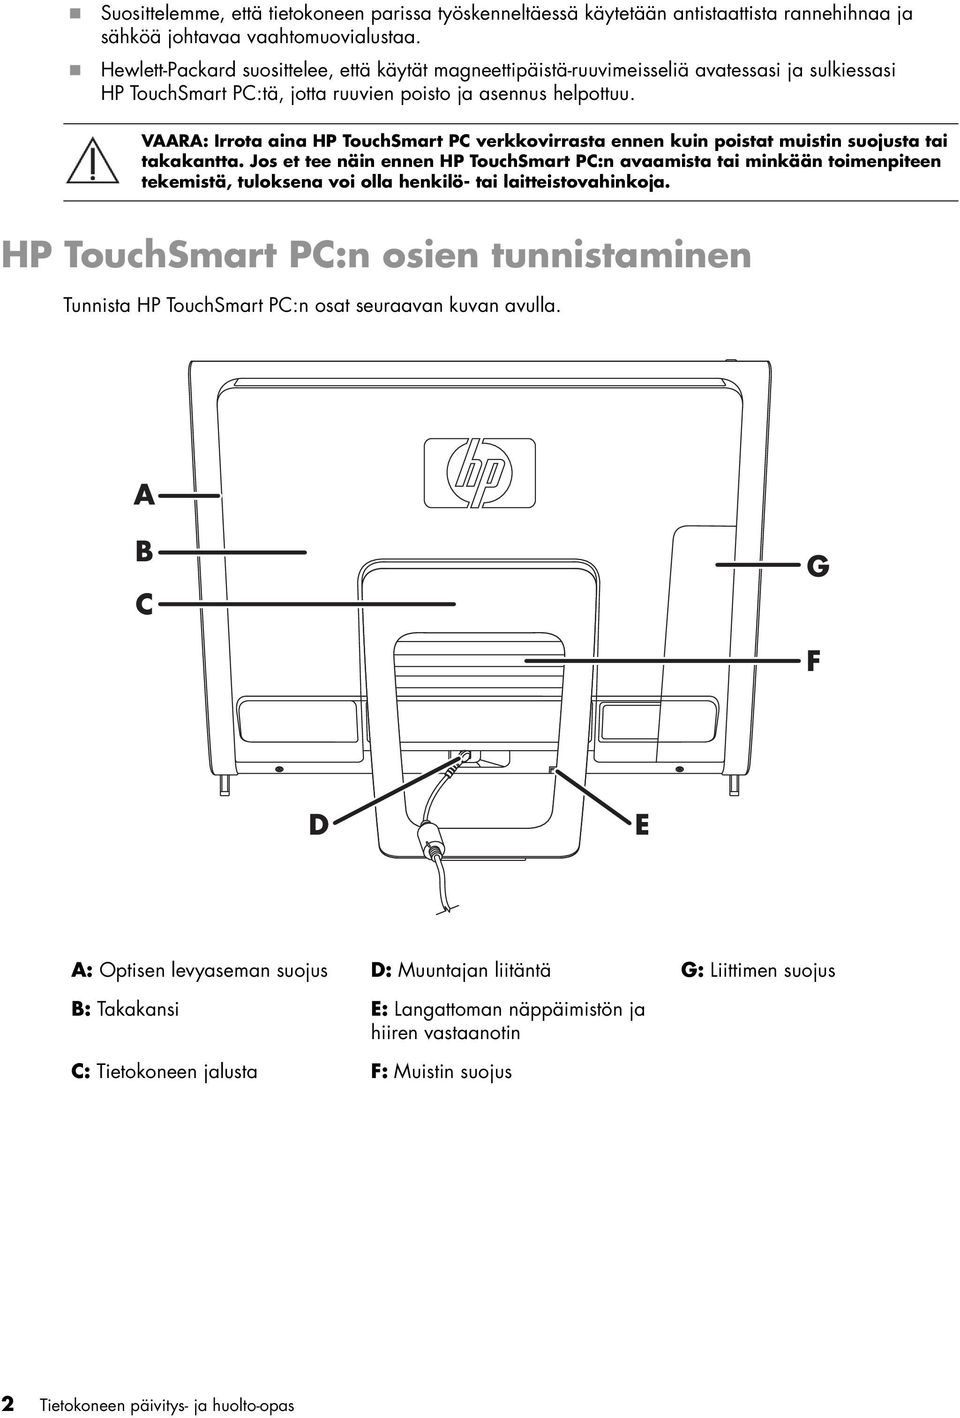 VAARA: Irrota aina HP TouchSmart PC verkkovirrasta ennen kuin poistat muistin suojusta tai takakantta.